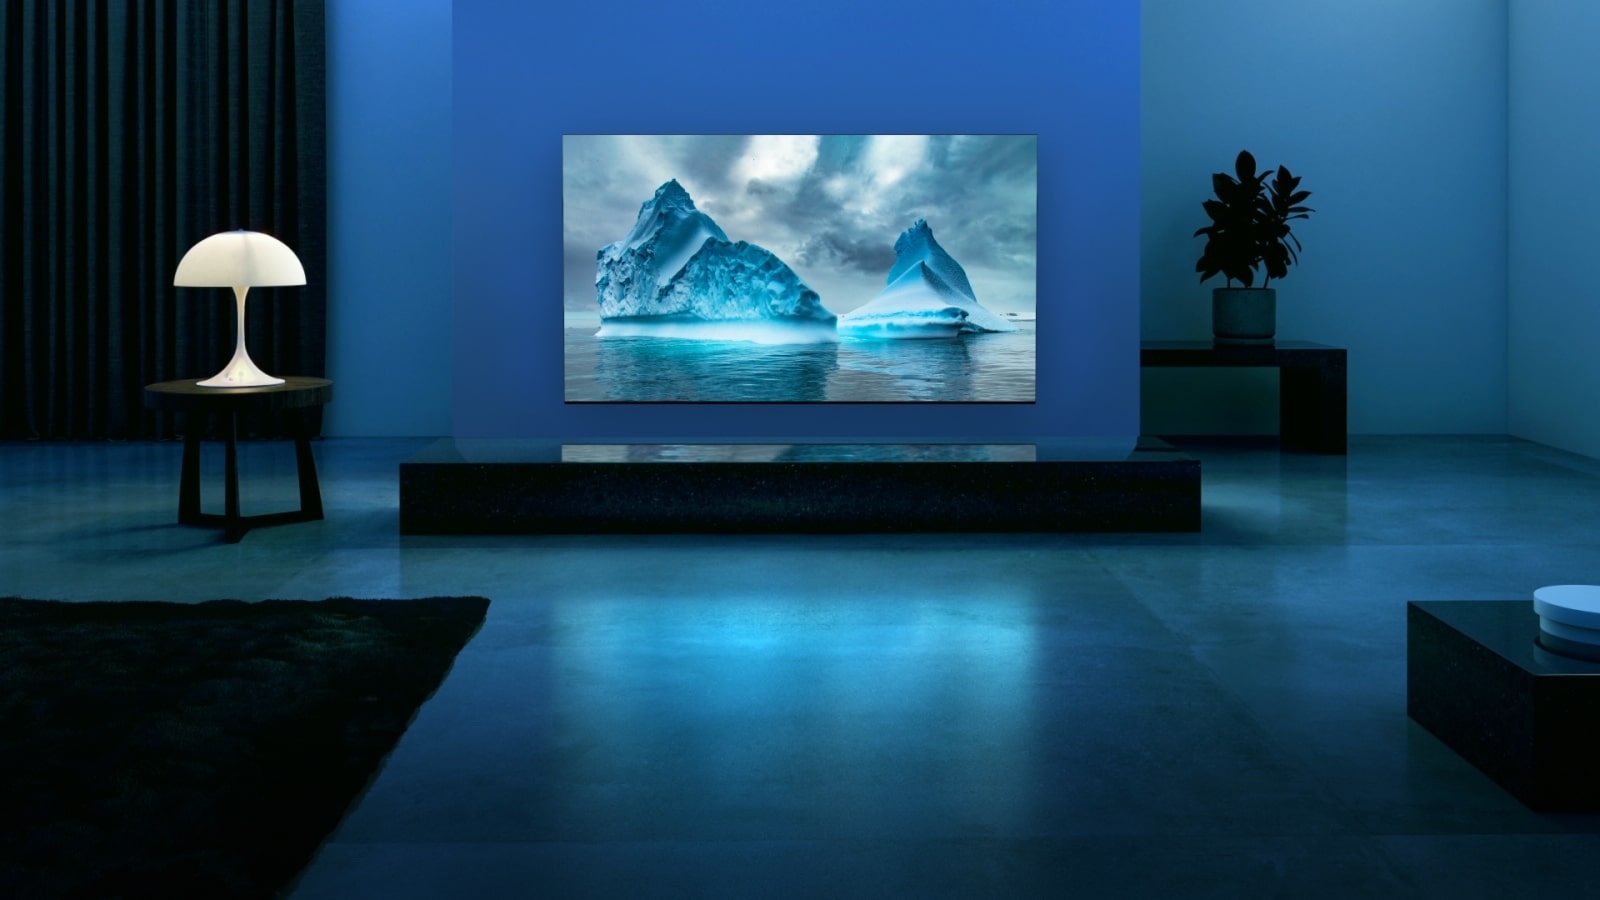 تتحرك دائرة النيون الزرقاء على صورة النهر الجليدي الأزرق. تقوم الكاميرا بتصغير الصورة لإظهار هذا النهر الجليدي الأزرق داخل شاشة التلفزيون. مشهد يظهر به تلفزيون في غرفة جلوس واسعة بخلفية زرقاء. 